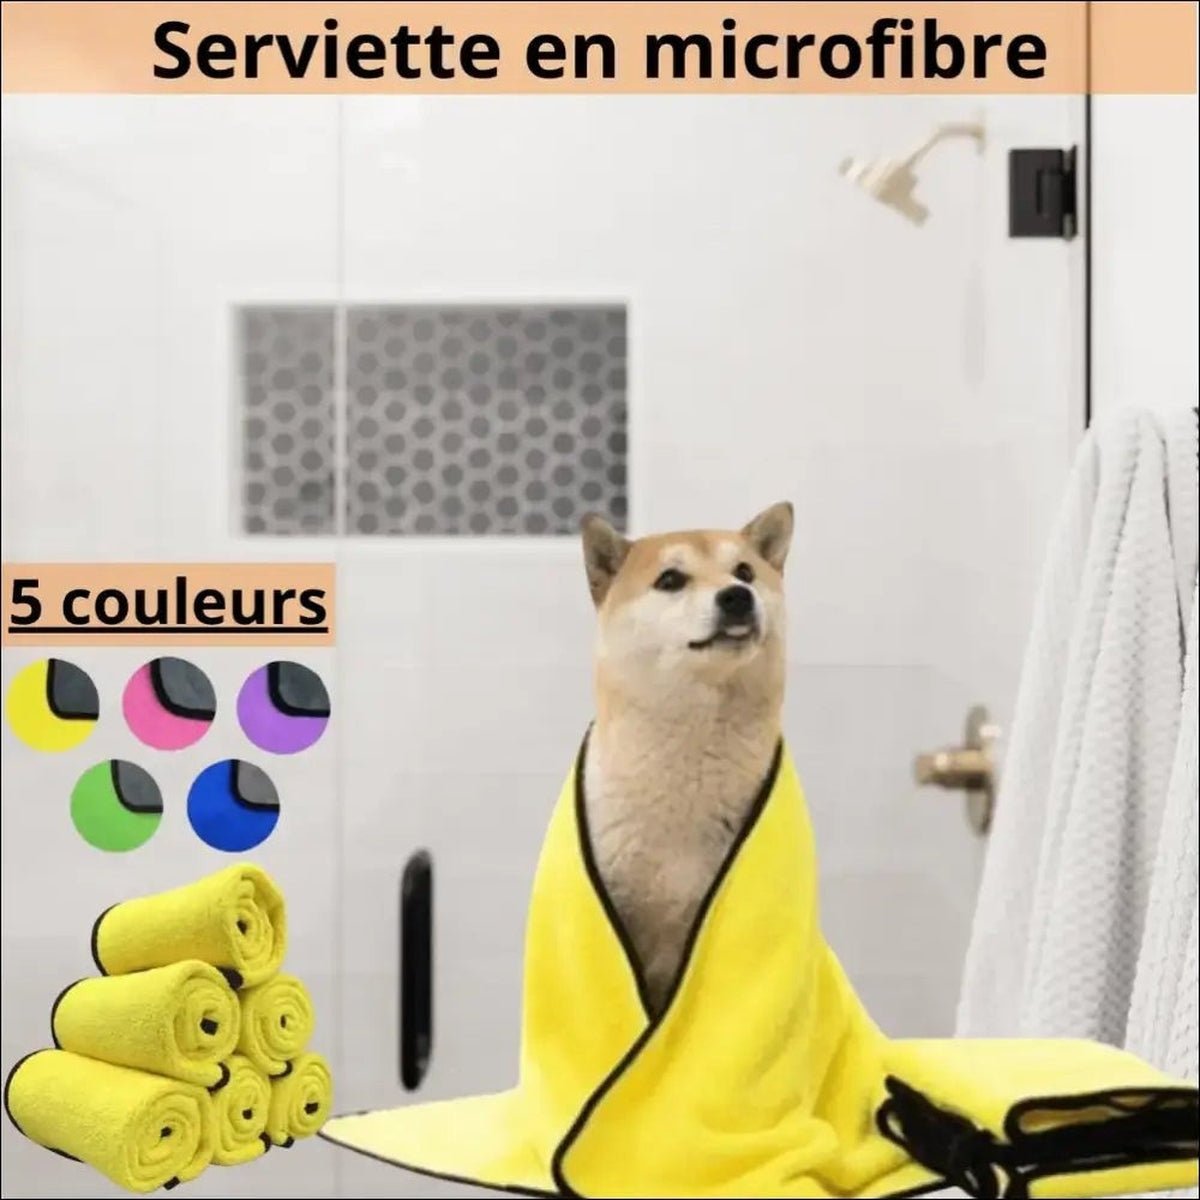 Serviette Microfibre Pour Chien Dogtowel - CJGY163863102BY - Serviettes - Chienalafolie